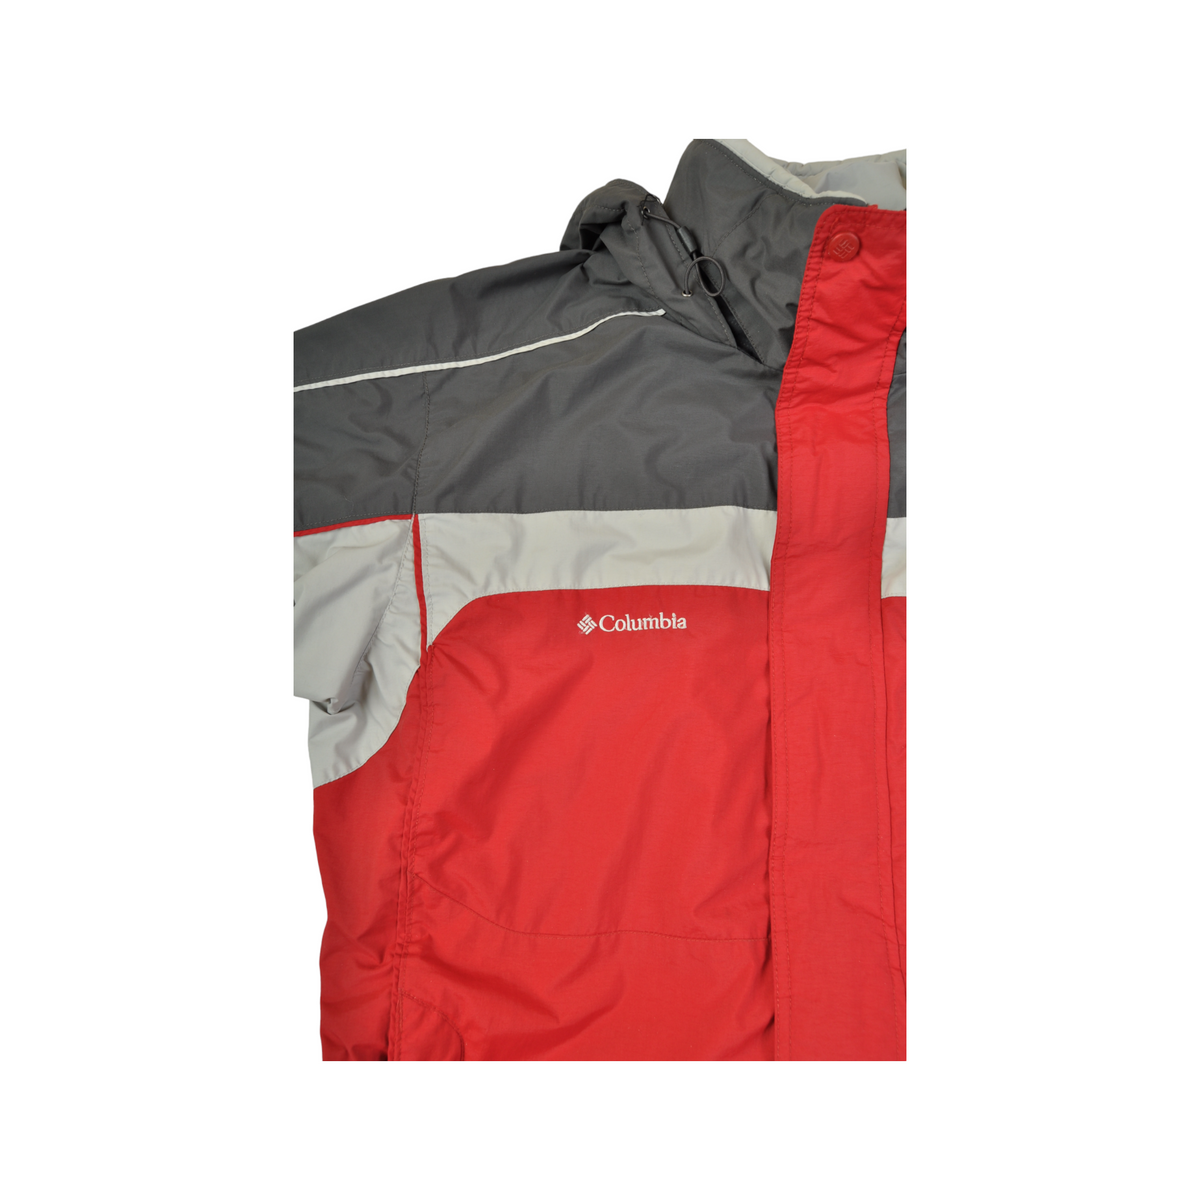 Vintage Columbia Ski Jacket Waterproof Red/Grey Large - Cloak Vintage